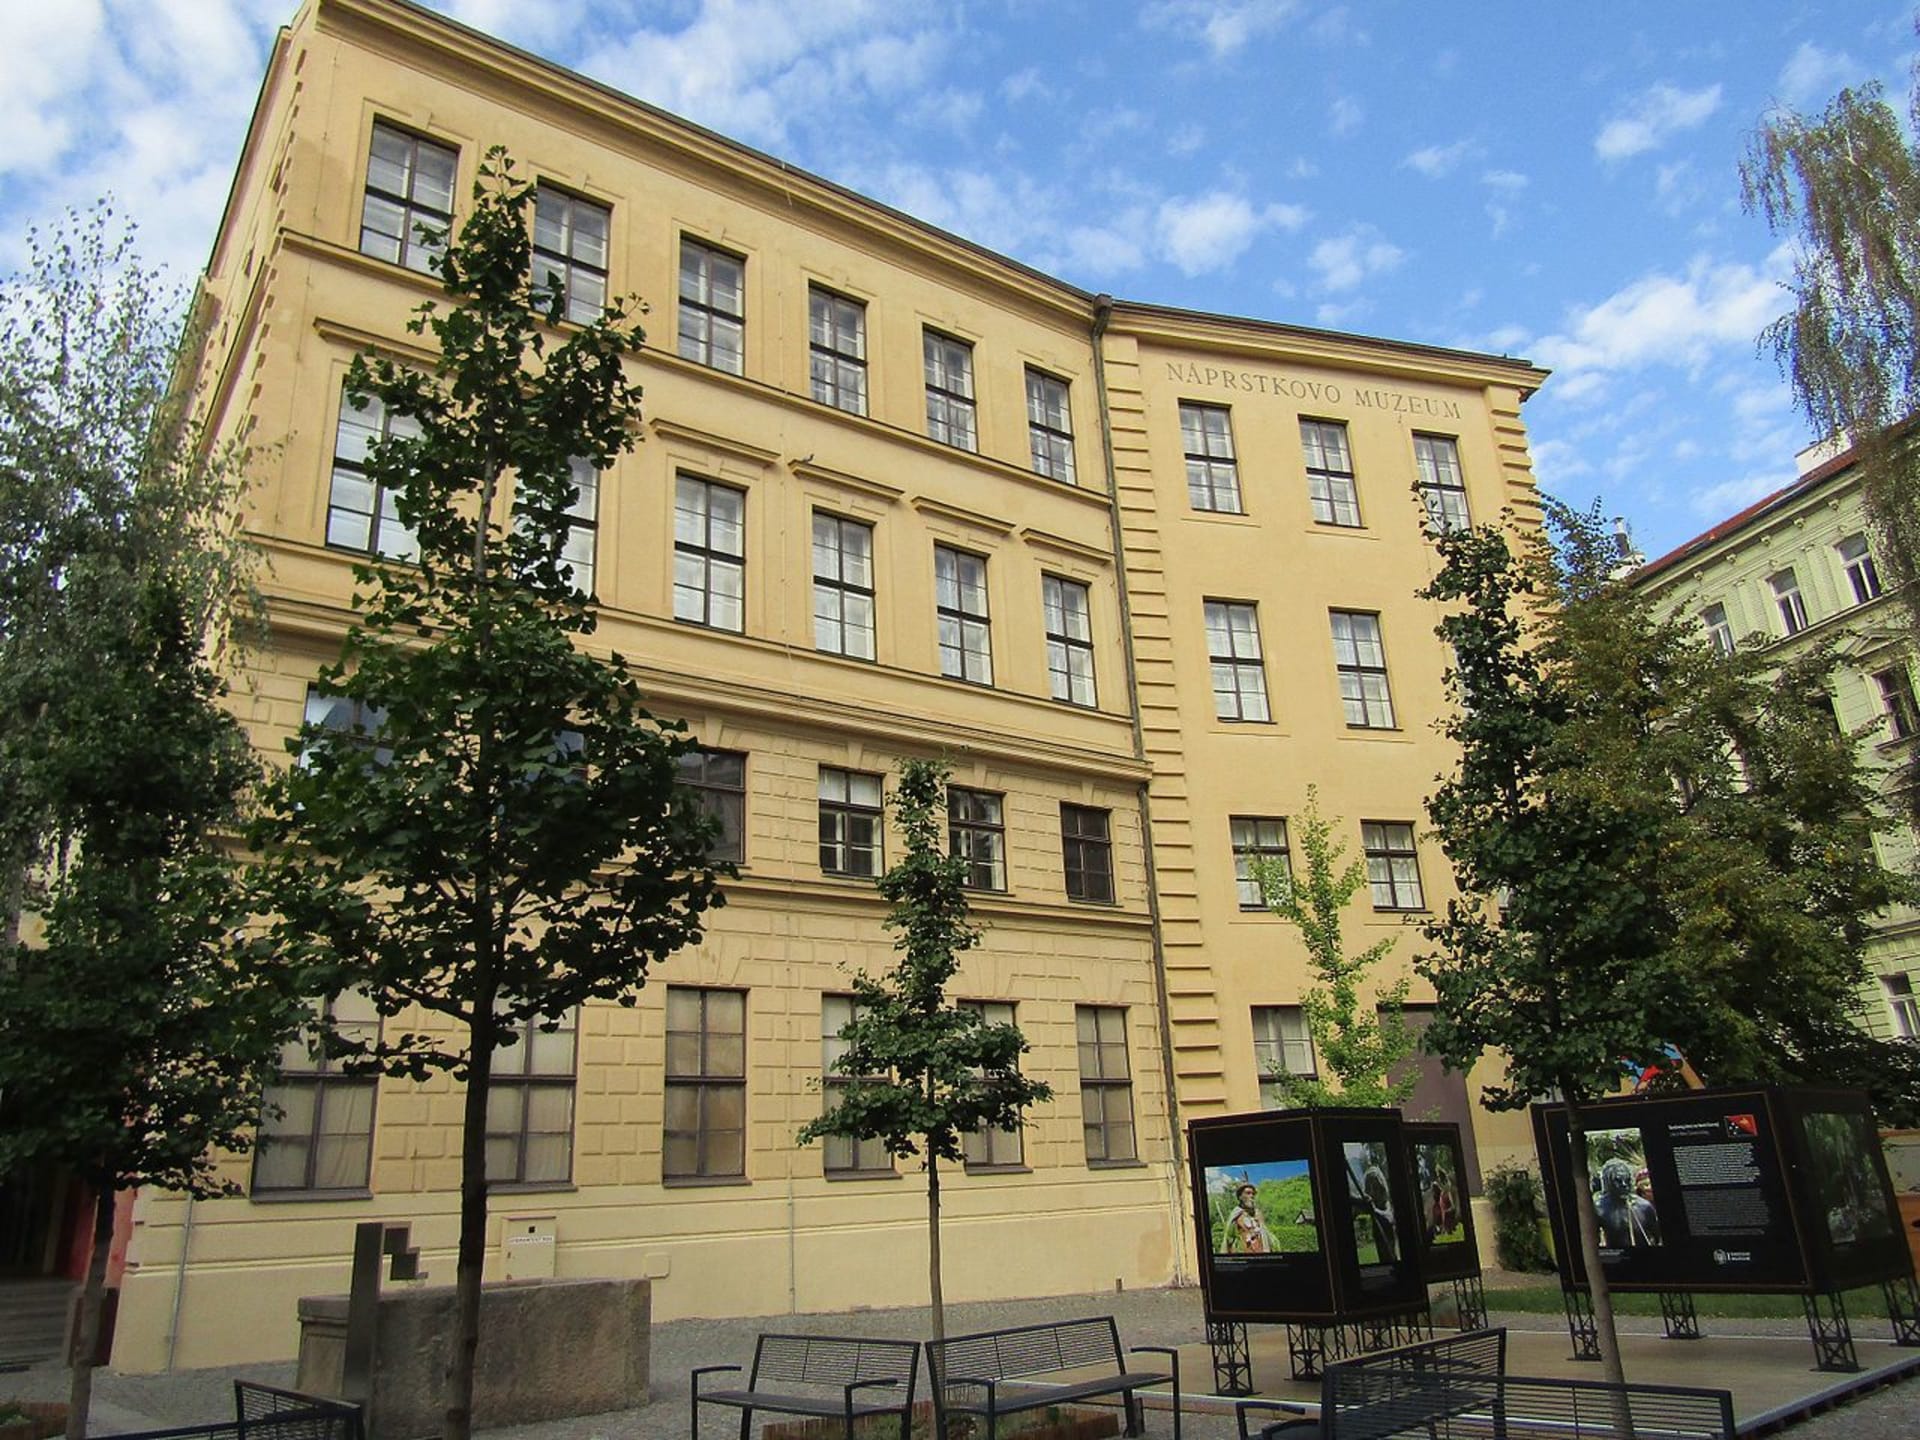 Budova náprstkova muzea v Praze